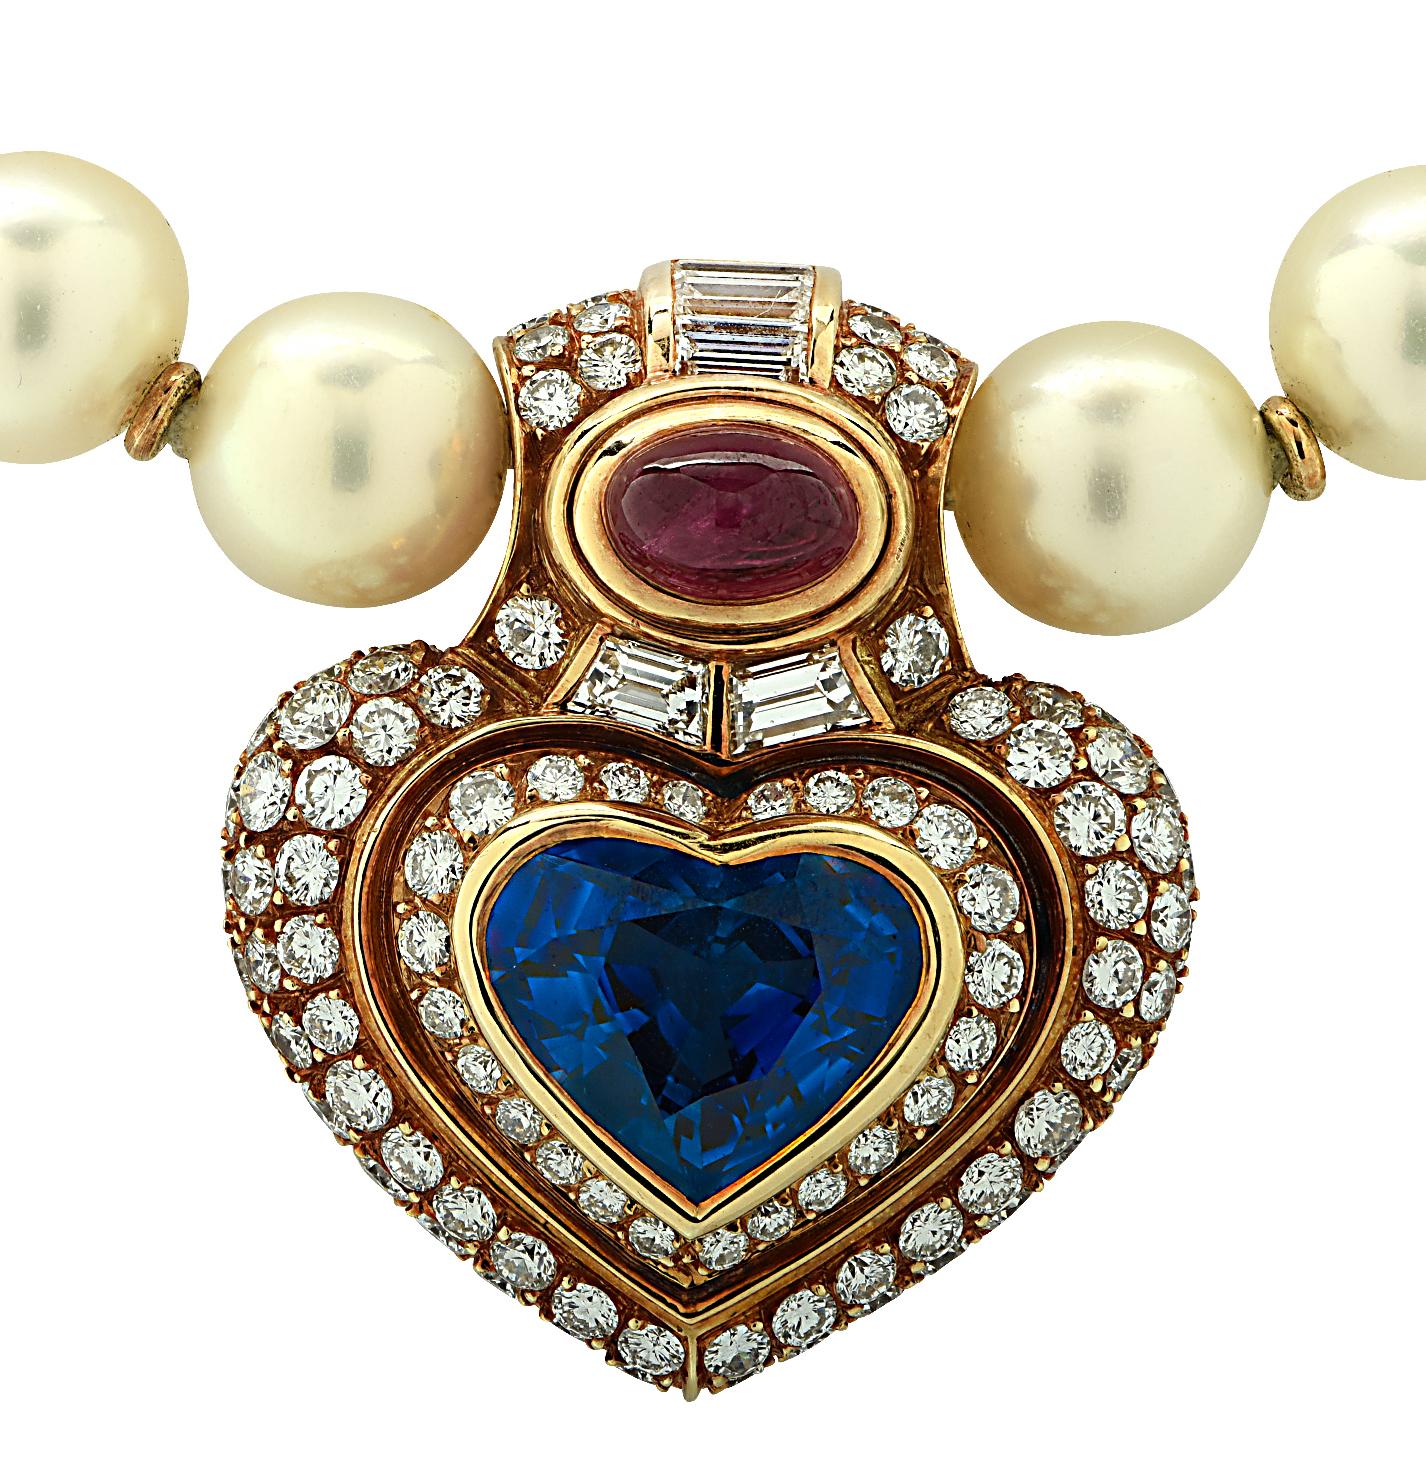 Sensationelle Bvlgari Perlen-, Saphir-, Rubin- und Diamantkette um 1990, gefertigt aus 18 Karat Gelbgold, mit einem AGL-zertifizierten herzförmigen blauen Ceylon-Saphir mit einem Gewicht von ca. 6,83 Karat, einem ovalen Rubin-Cabochon mit einem